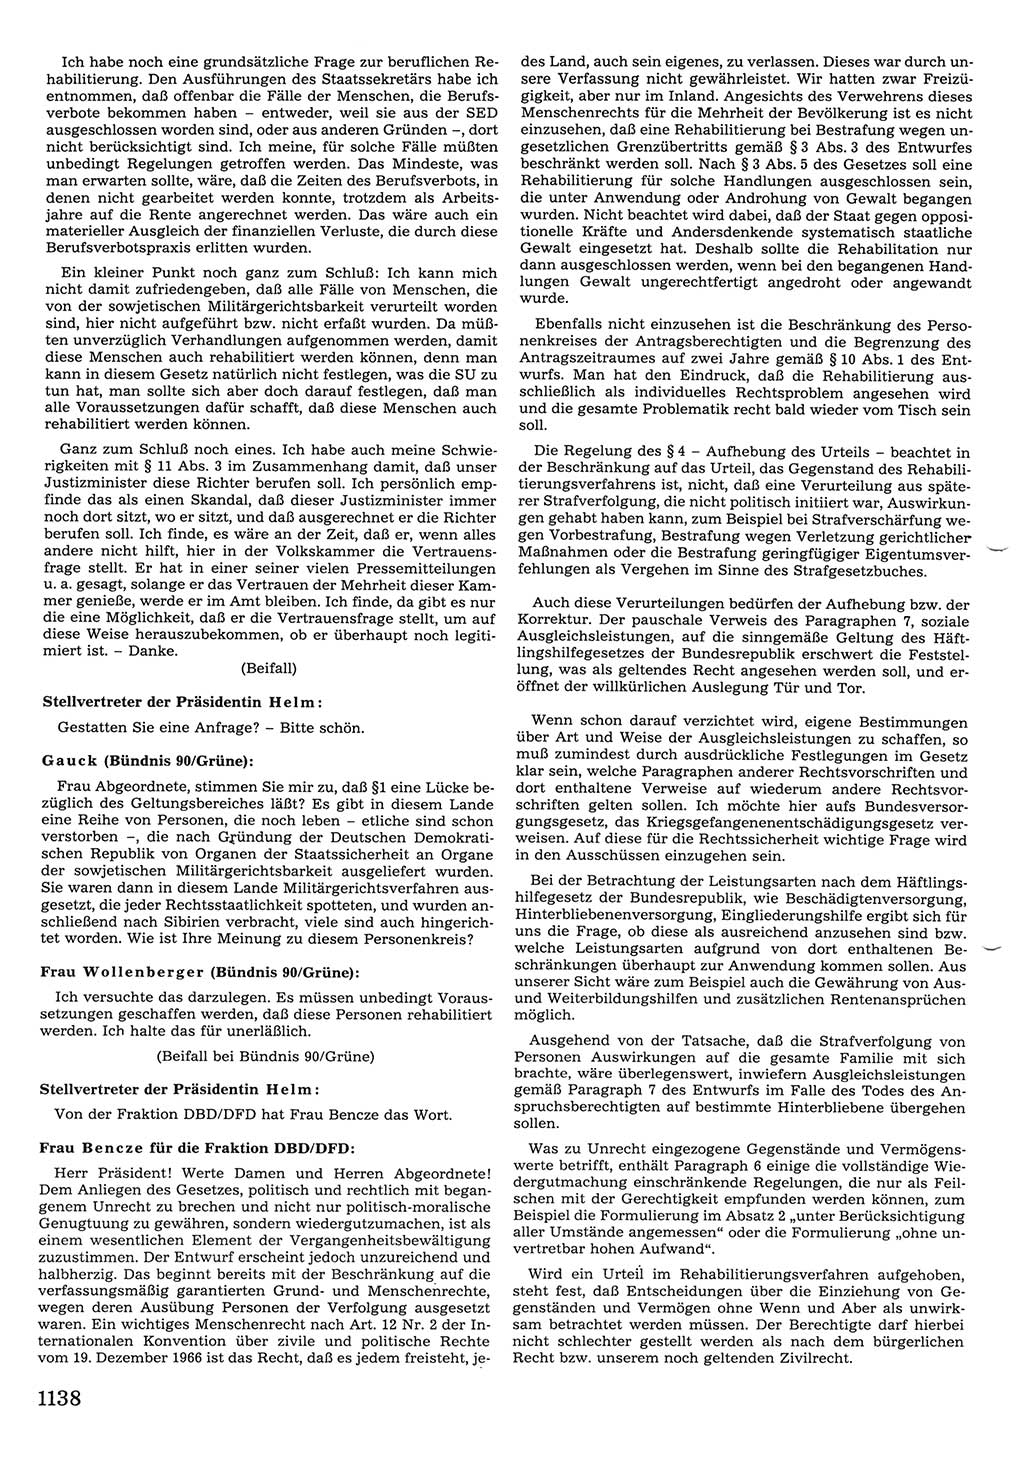 Tagungen der Volkskammer (VK) der Deutschen Demokratischen Republik (DDR), 10. Wahlperiode 1990, Seite 1138 (VK. DDR 10. WP. 1990, Prot. Tg. 1-38, 5.4.-2.10.1990, S. 1138)